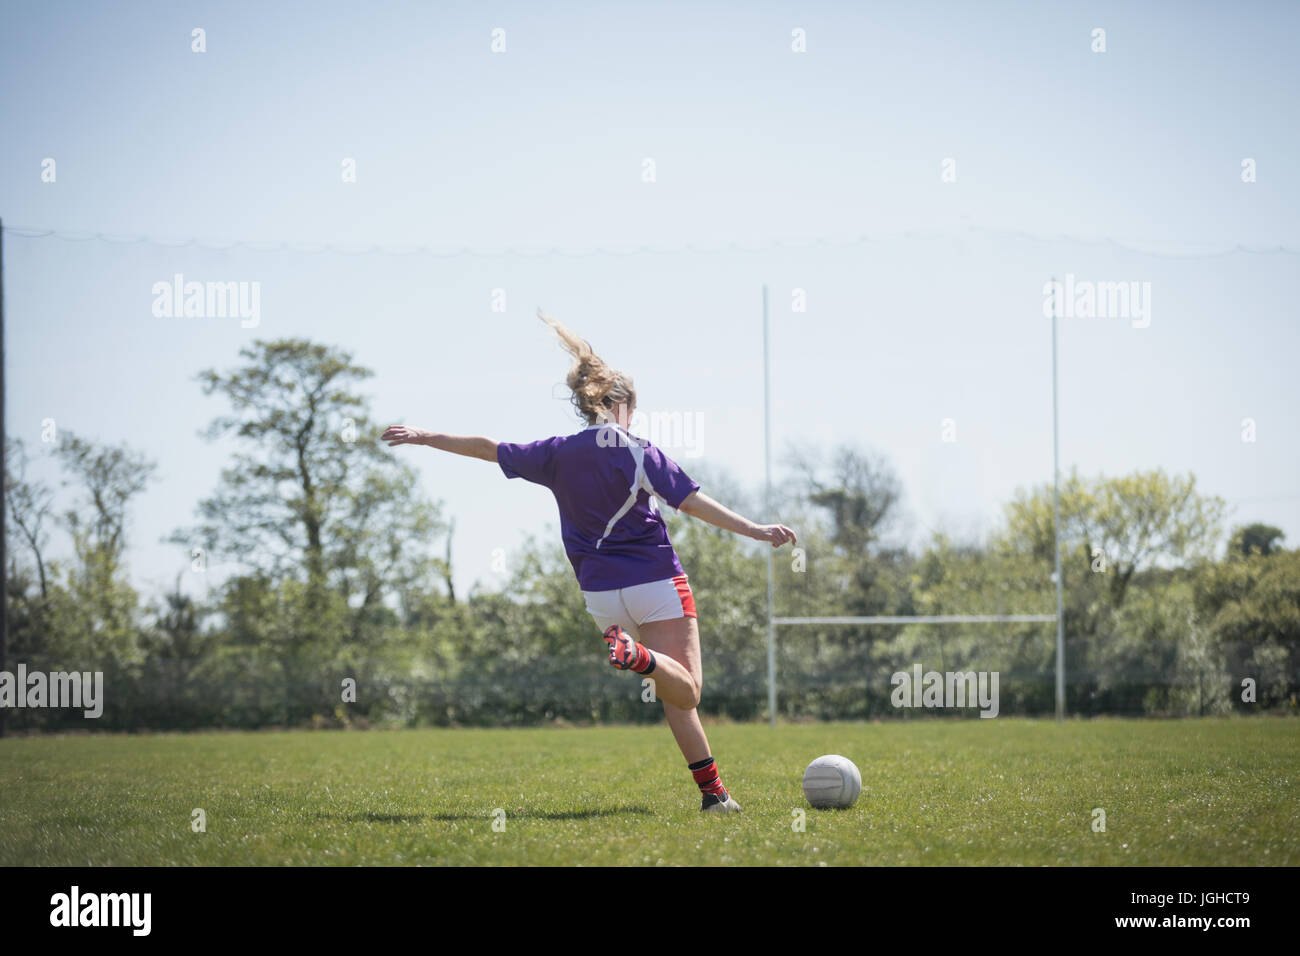 Vue arrière du Jeune femme jouant au football sur terrain against sky Banque D'Images